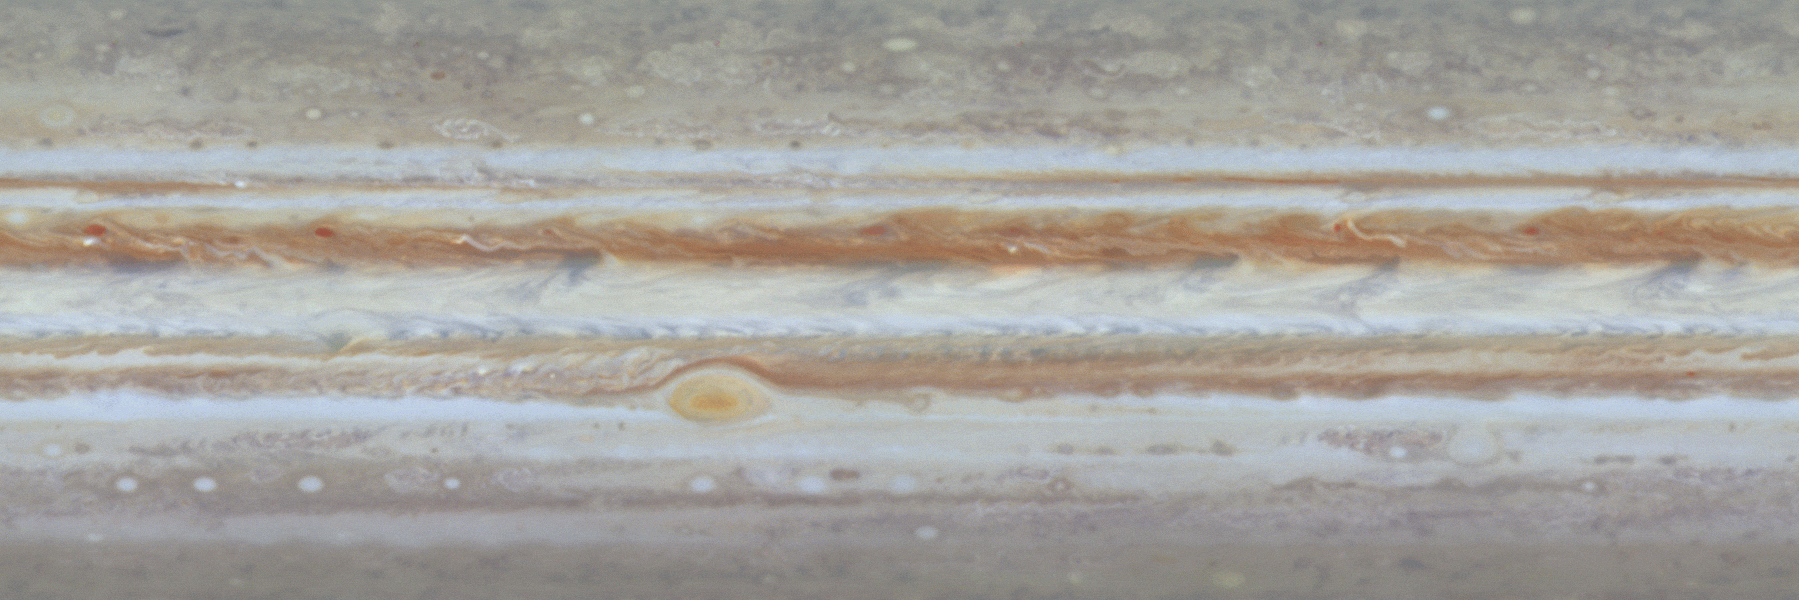 木星の雲の流れを示したアニメーション